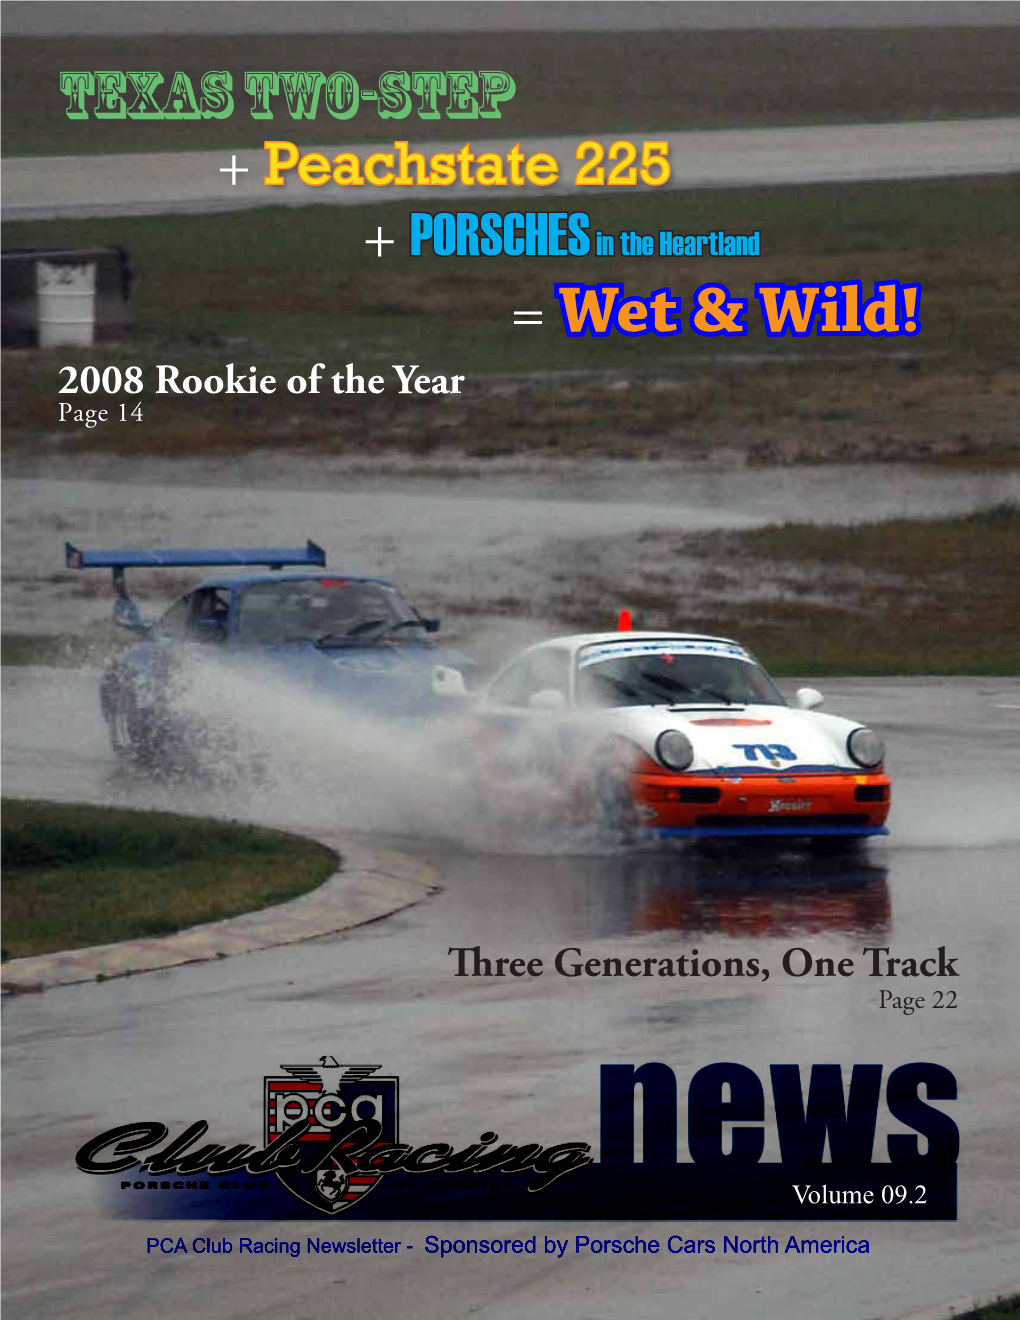 + Peachstate 225 + Porschesin the Heartland = Wet & Wild!